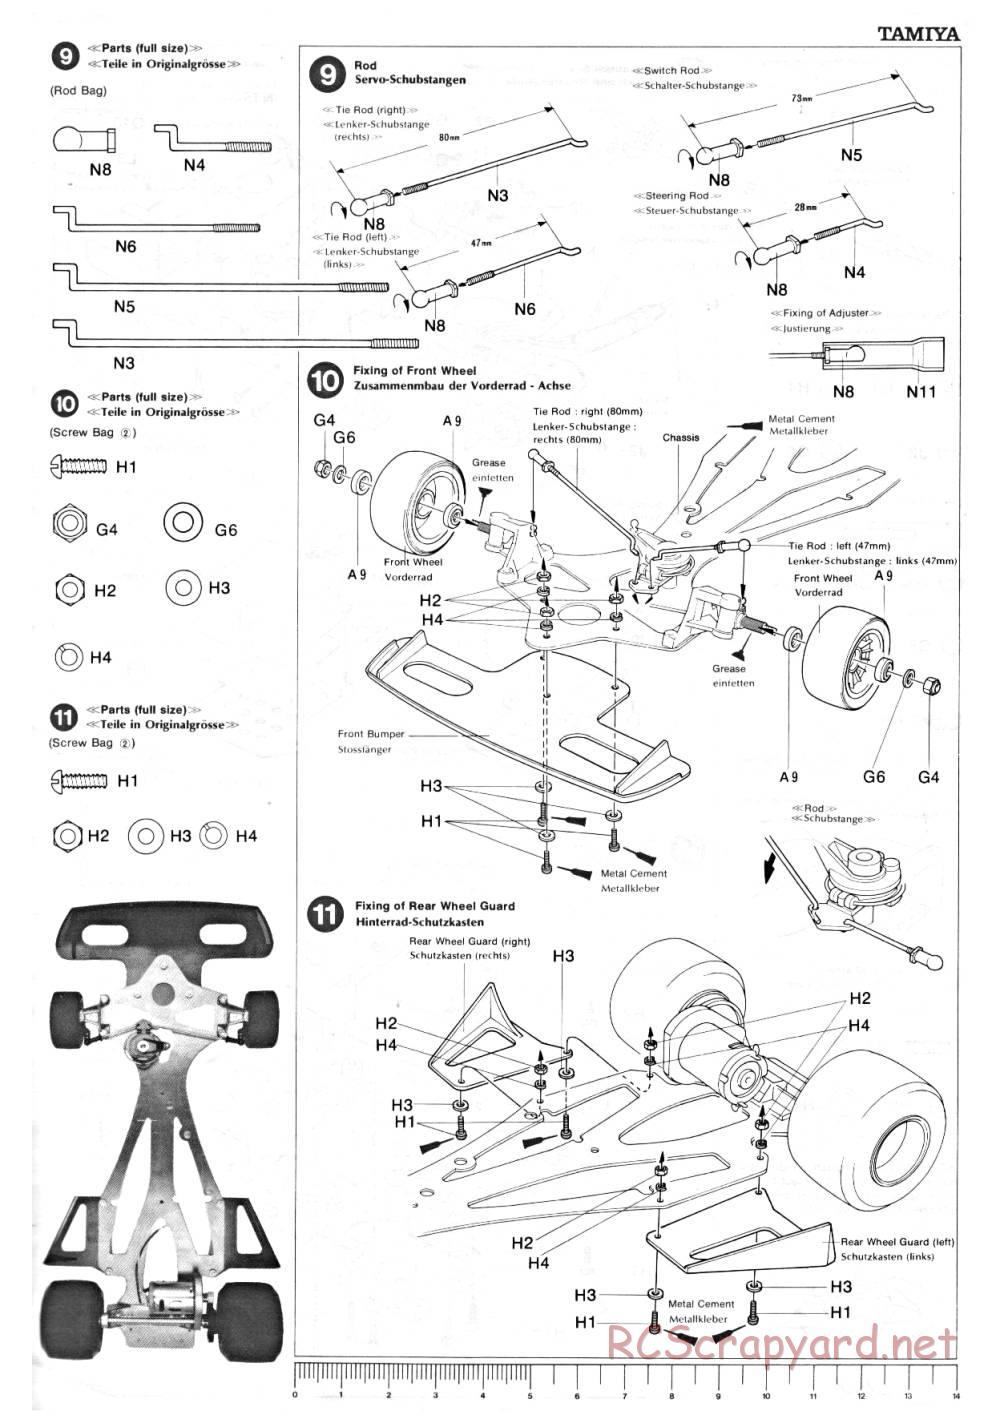 Tamiya - Ligier JS9 Matra - 58010 - Manual - Page 7